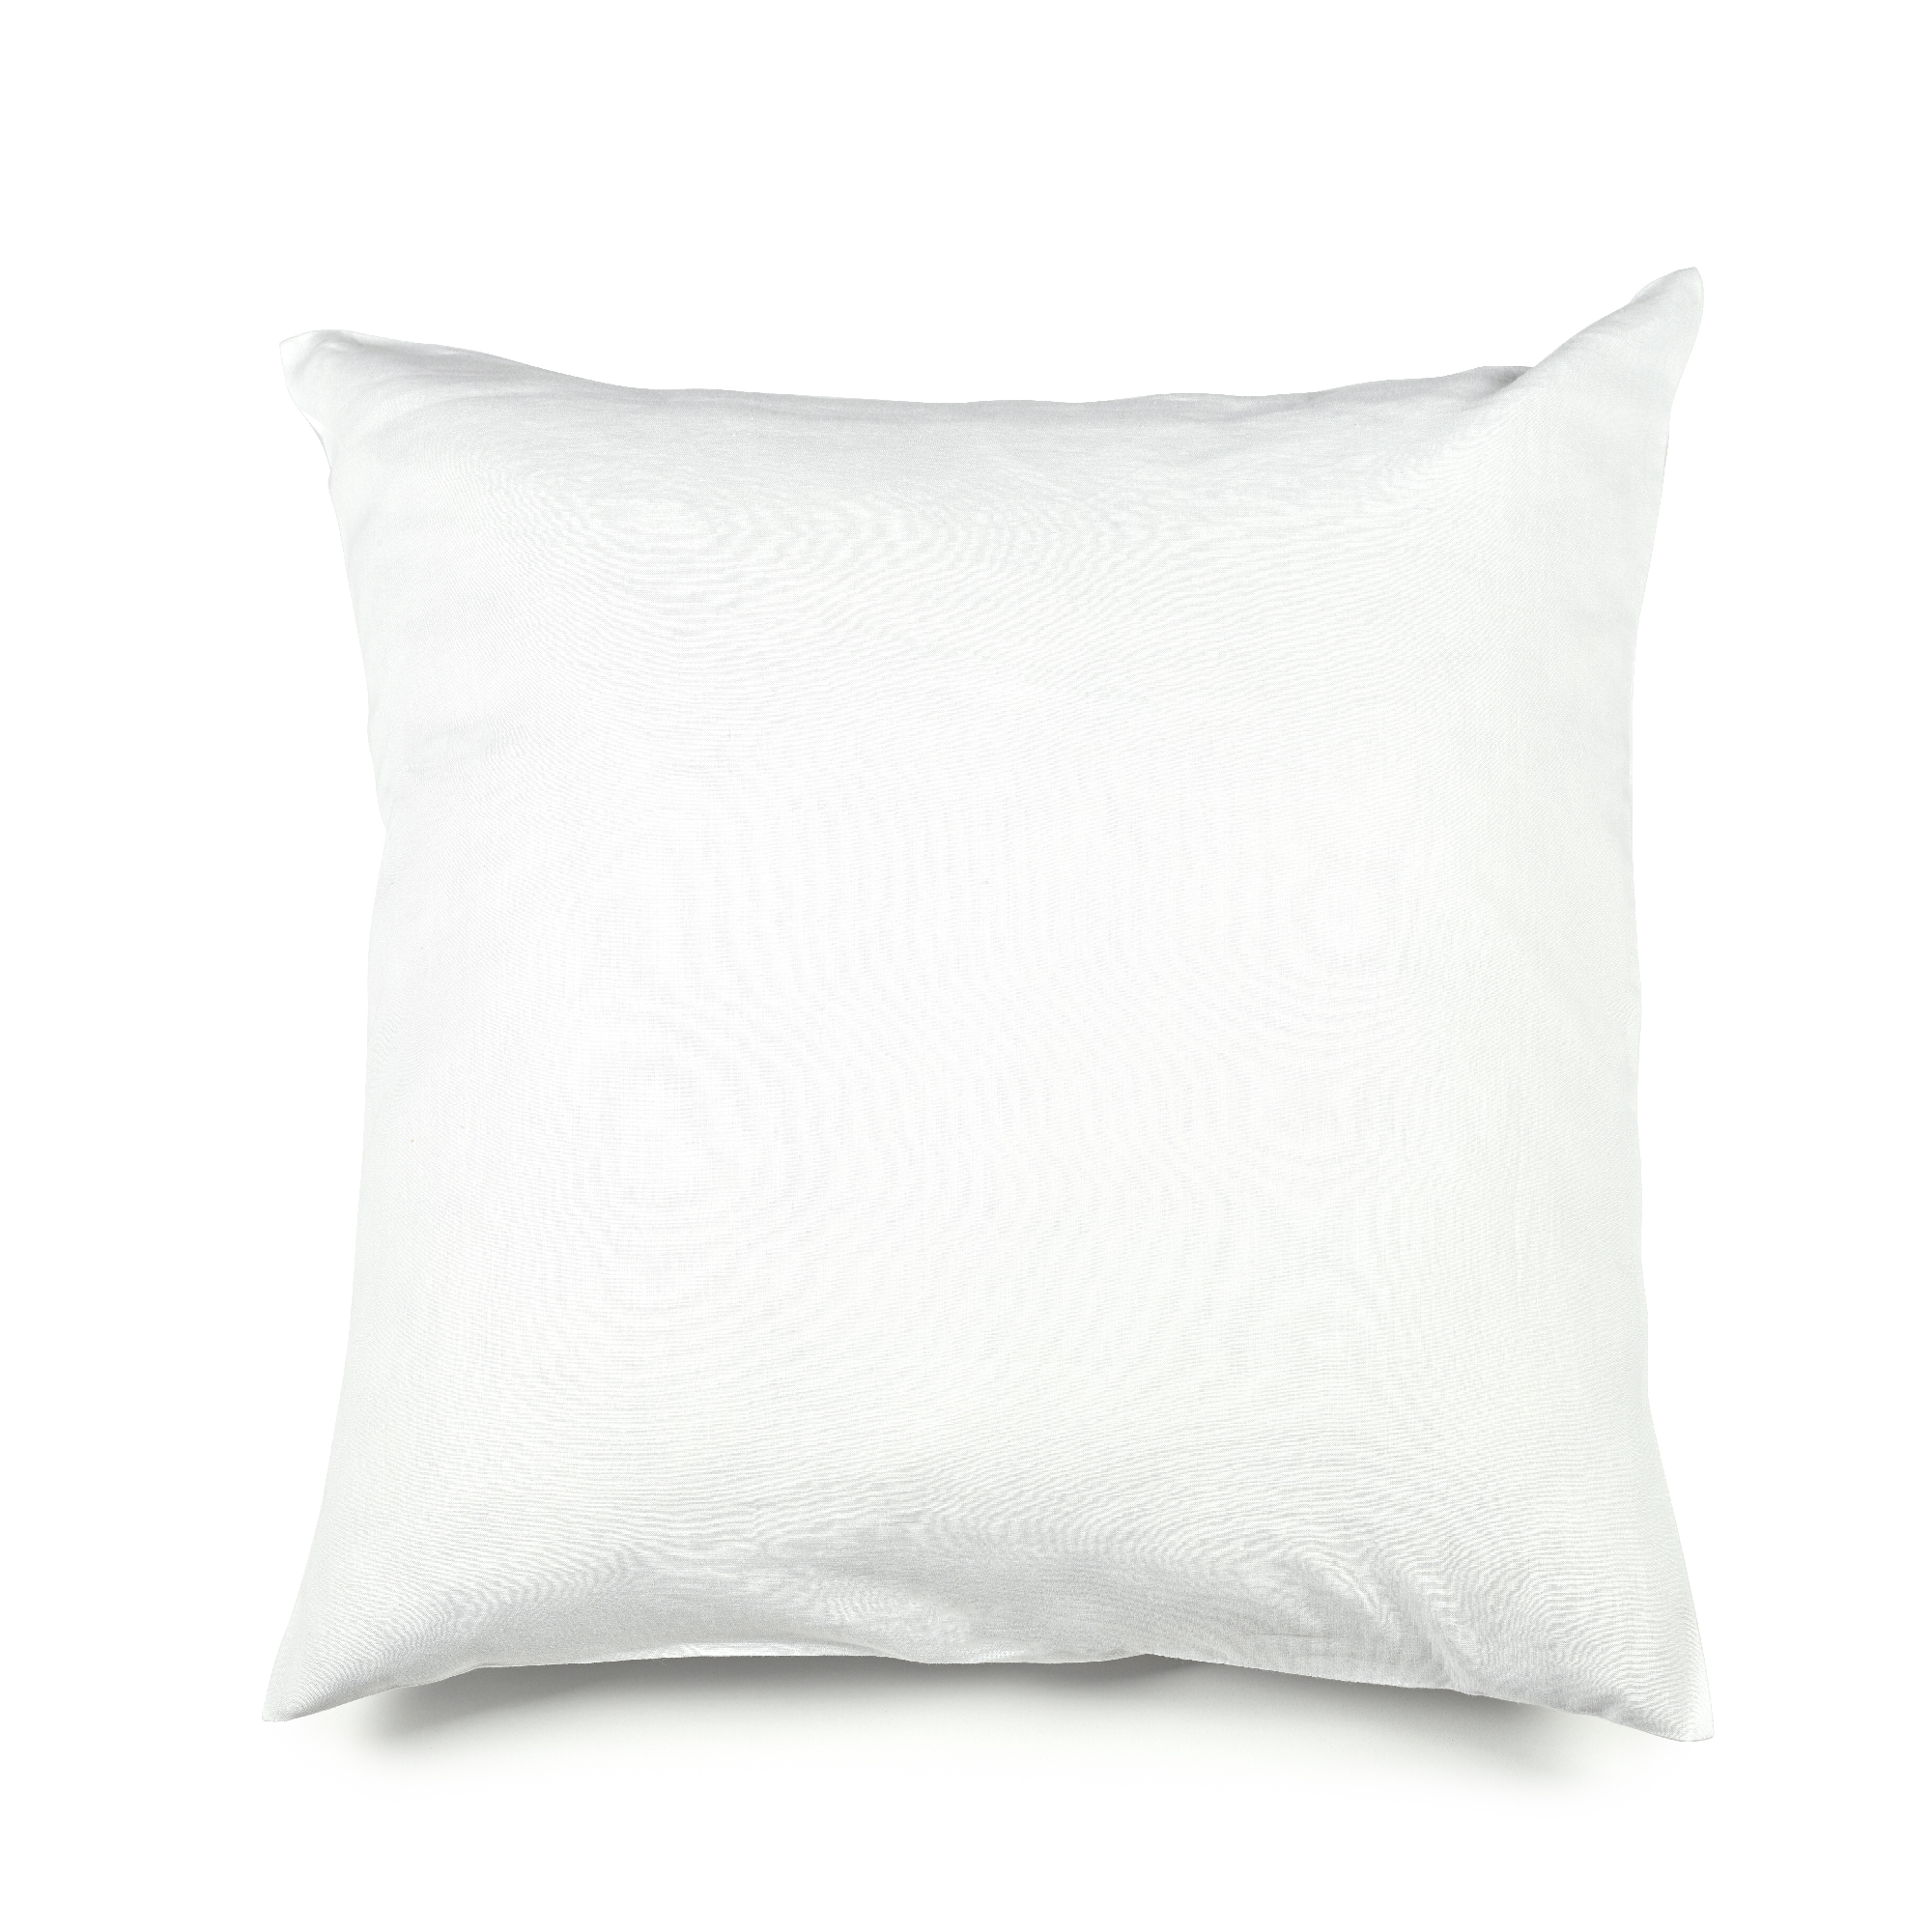 Madison Lumbar Pillow Cover